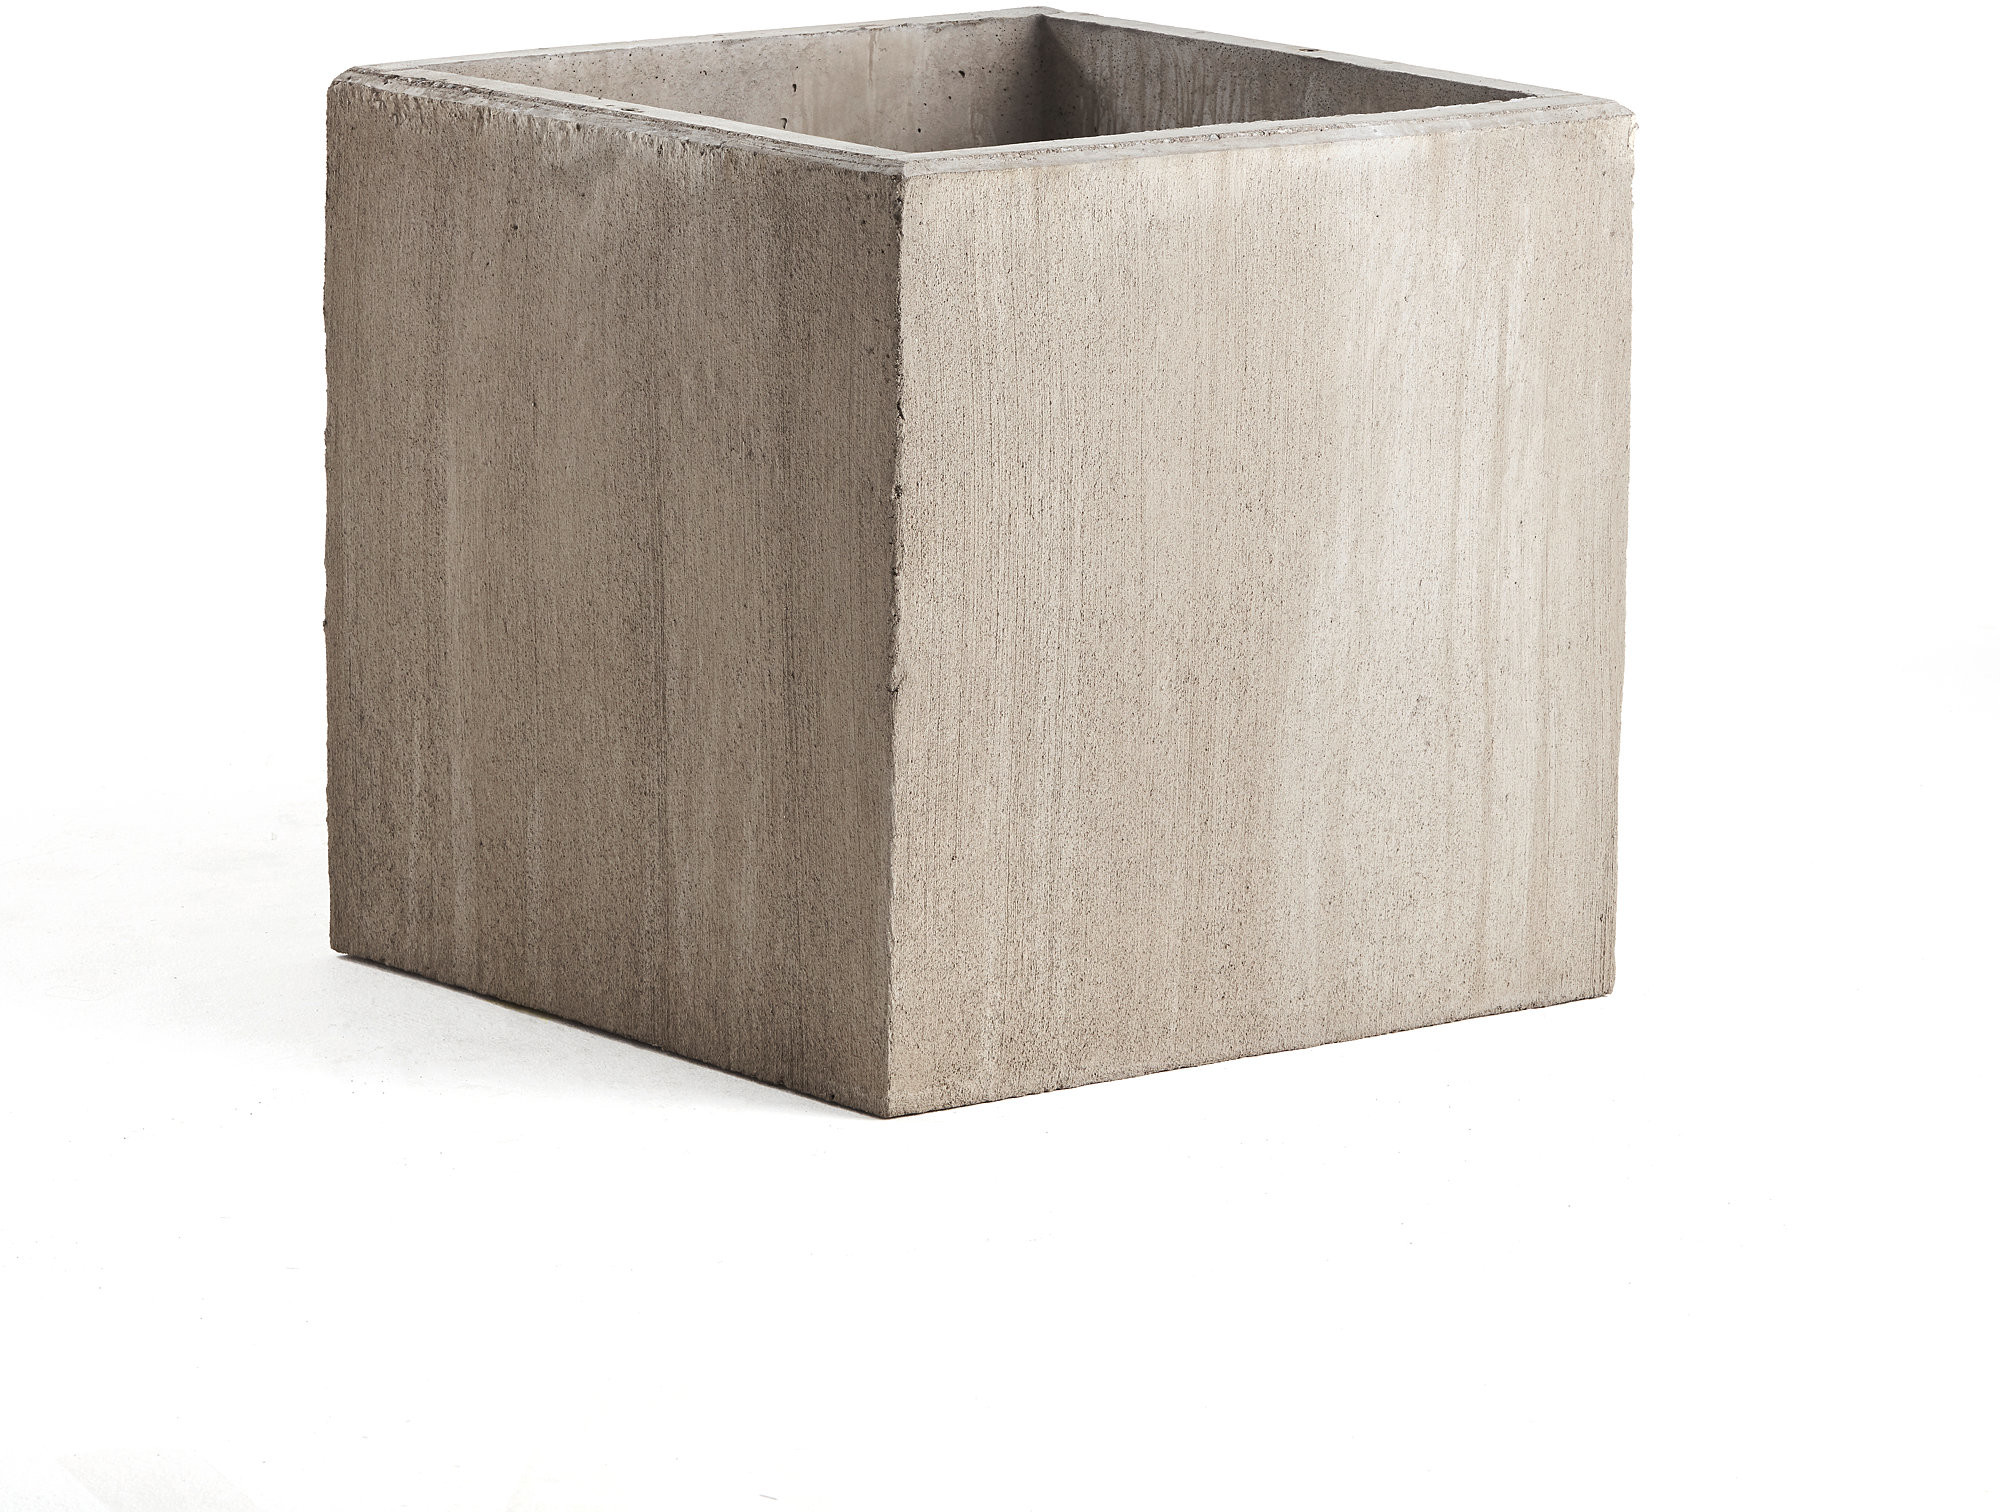 AJ Produkty Donica betonowa, 750x750 mm, szara